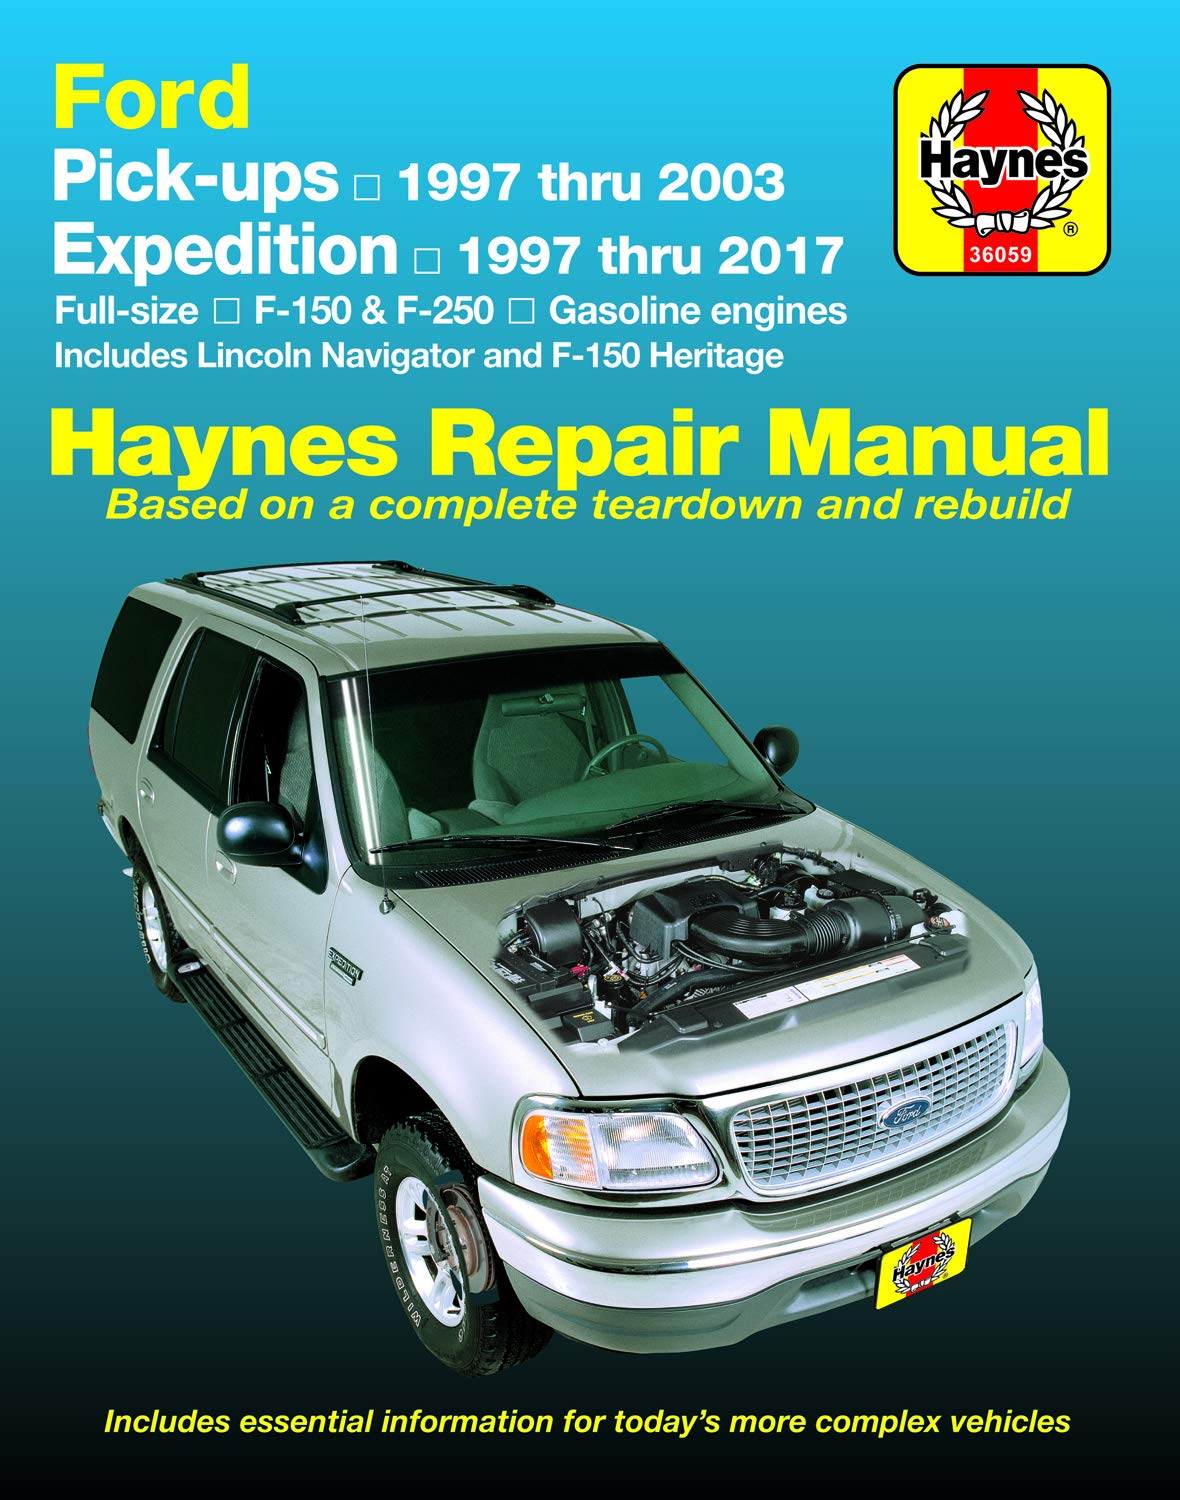 chilton repair manuals free download